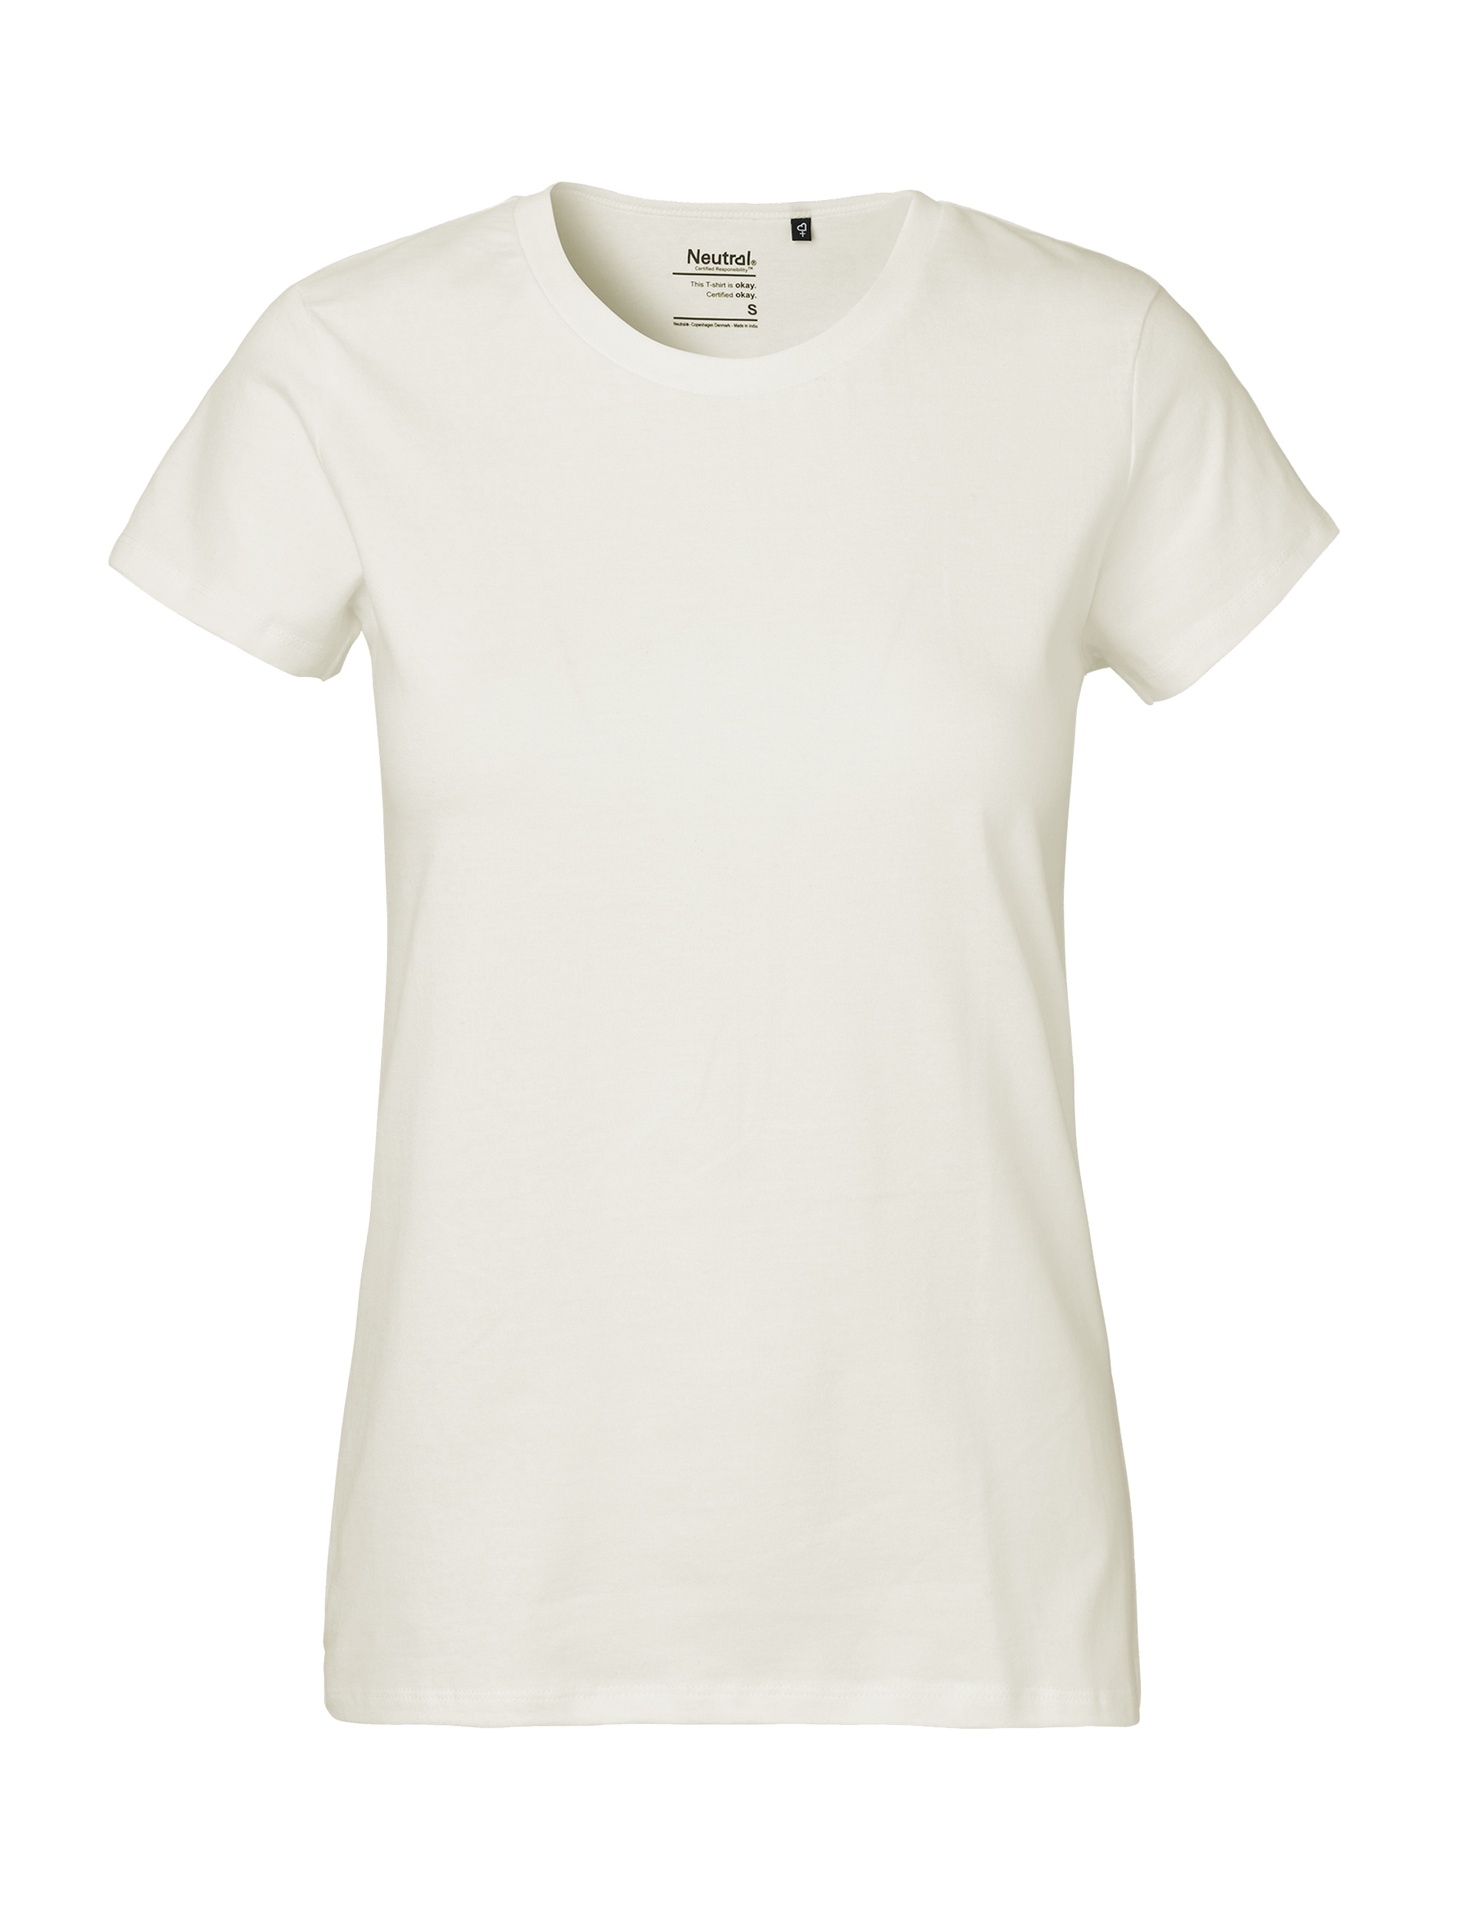 [PR/03988] Ladies Classic T-Shirt (Nature 00, L)